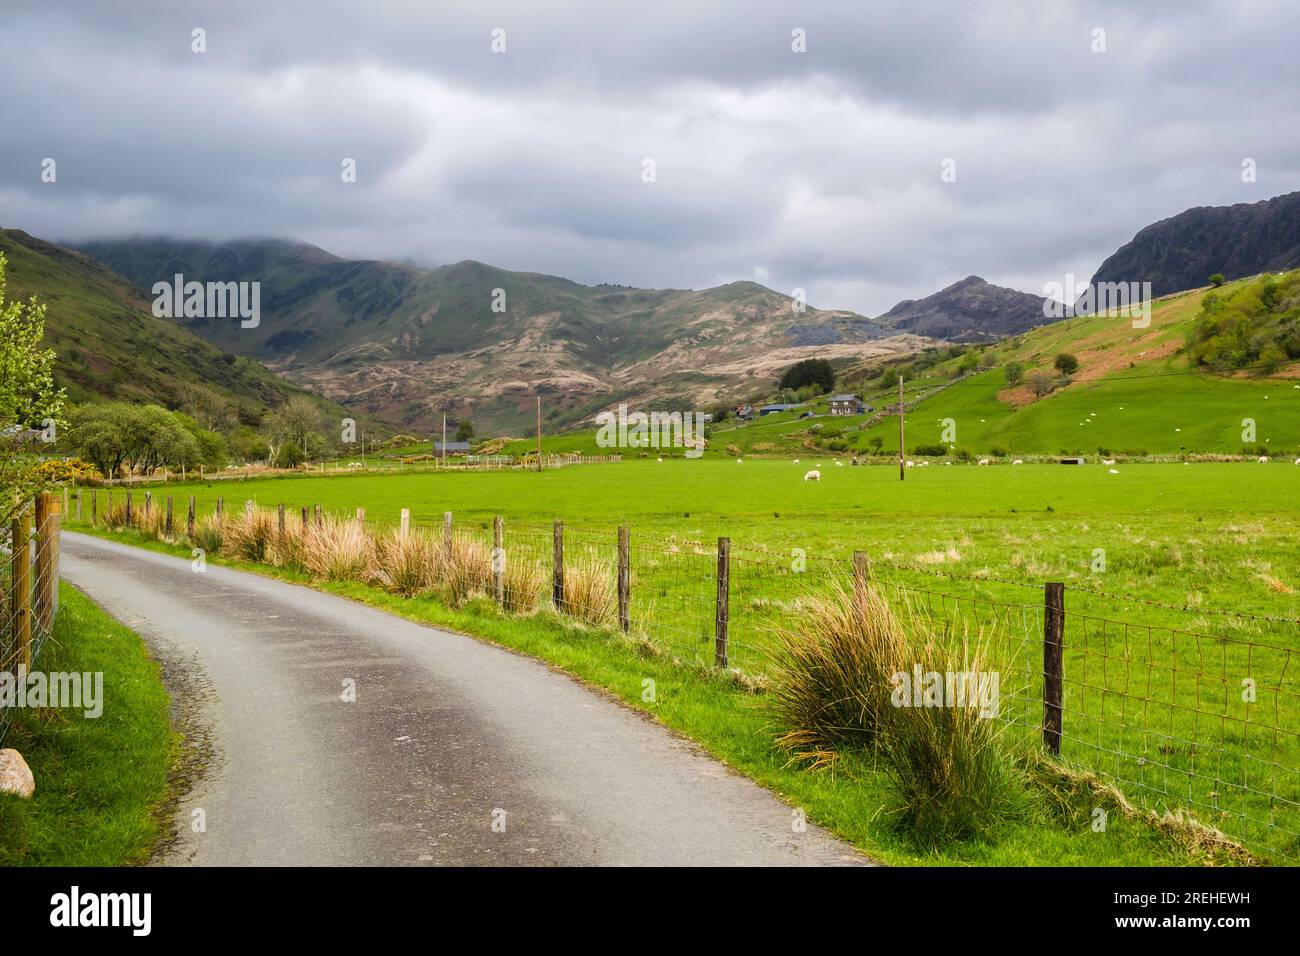 Im Snowdonia-Nationalpark könnt ihr den Cwm Pennant Valley entlang der engen Landstraße bestaunen. Llanfihangel-y-pennant, Porthmadog, Gwynedd, North Wales, Vereinigtes Königreich, Großbritannien Stockfoto